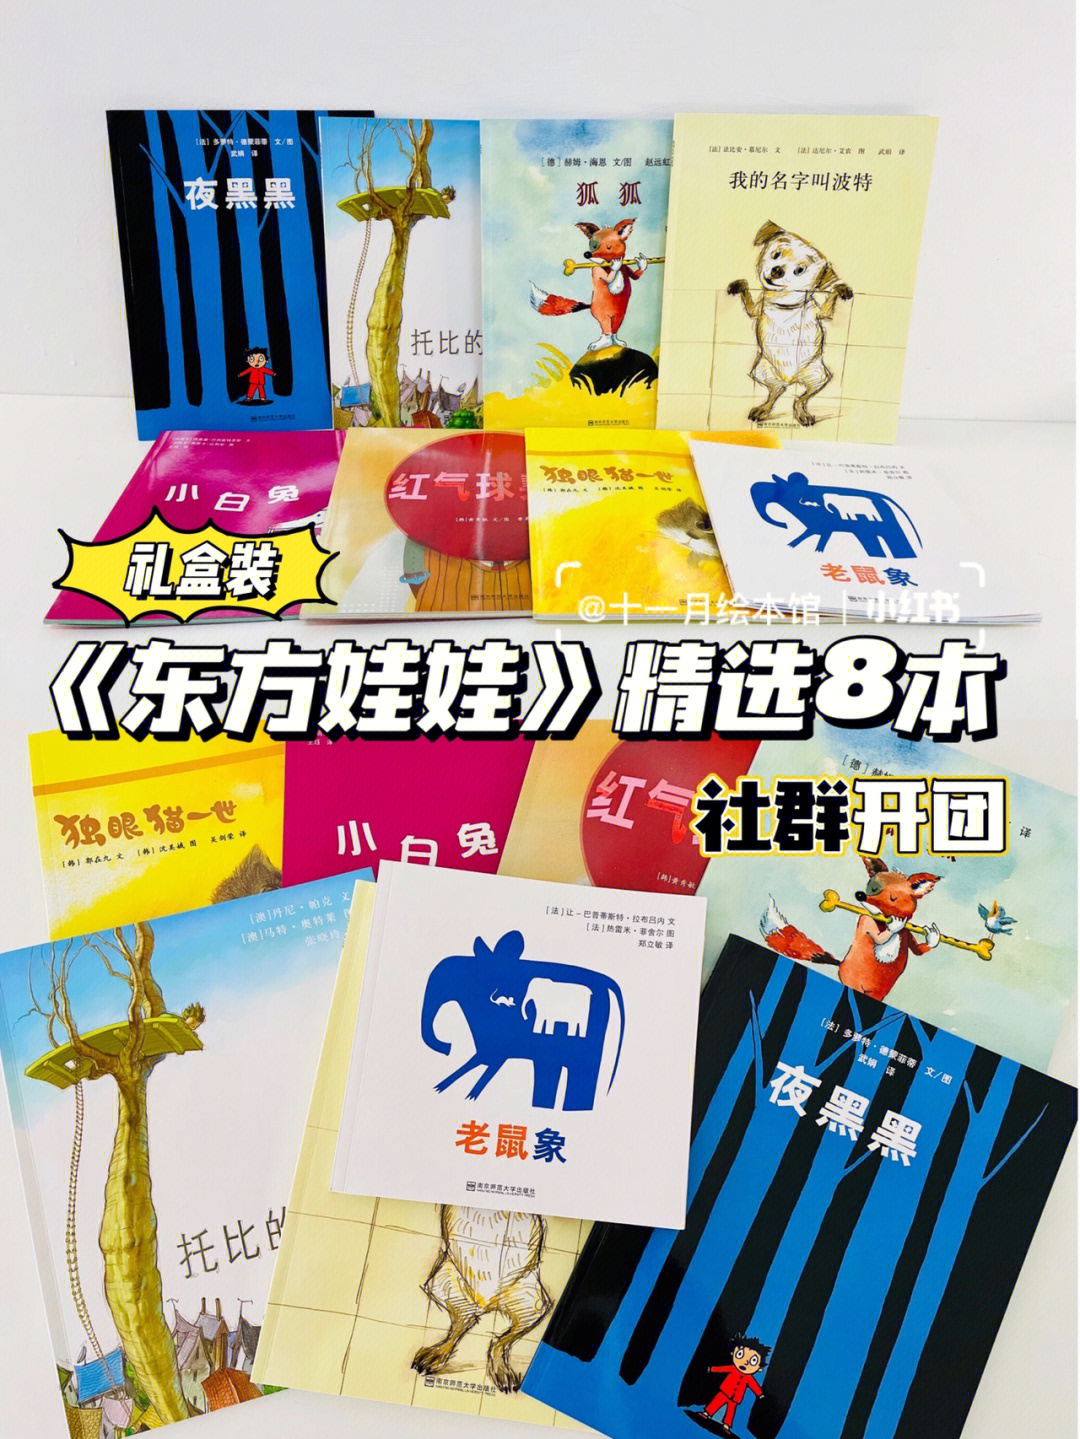 97连童书大咖彭懿都称赞中国最好的绘本编辑团队在《东方娃娃》!